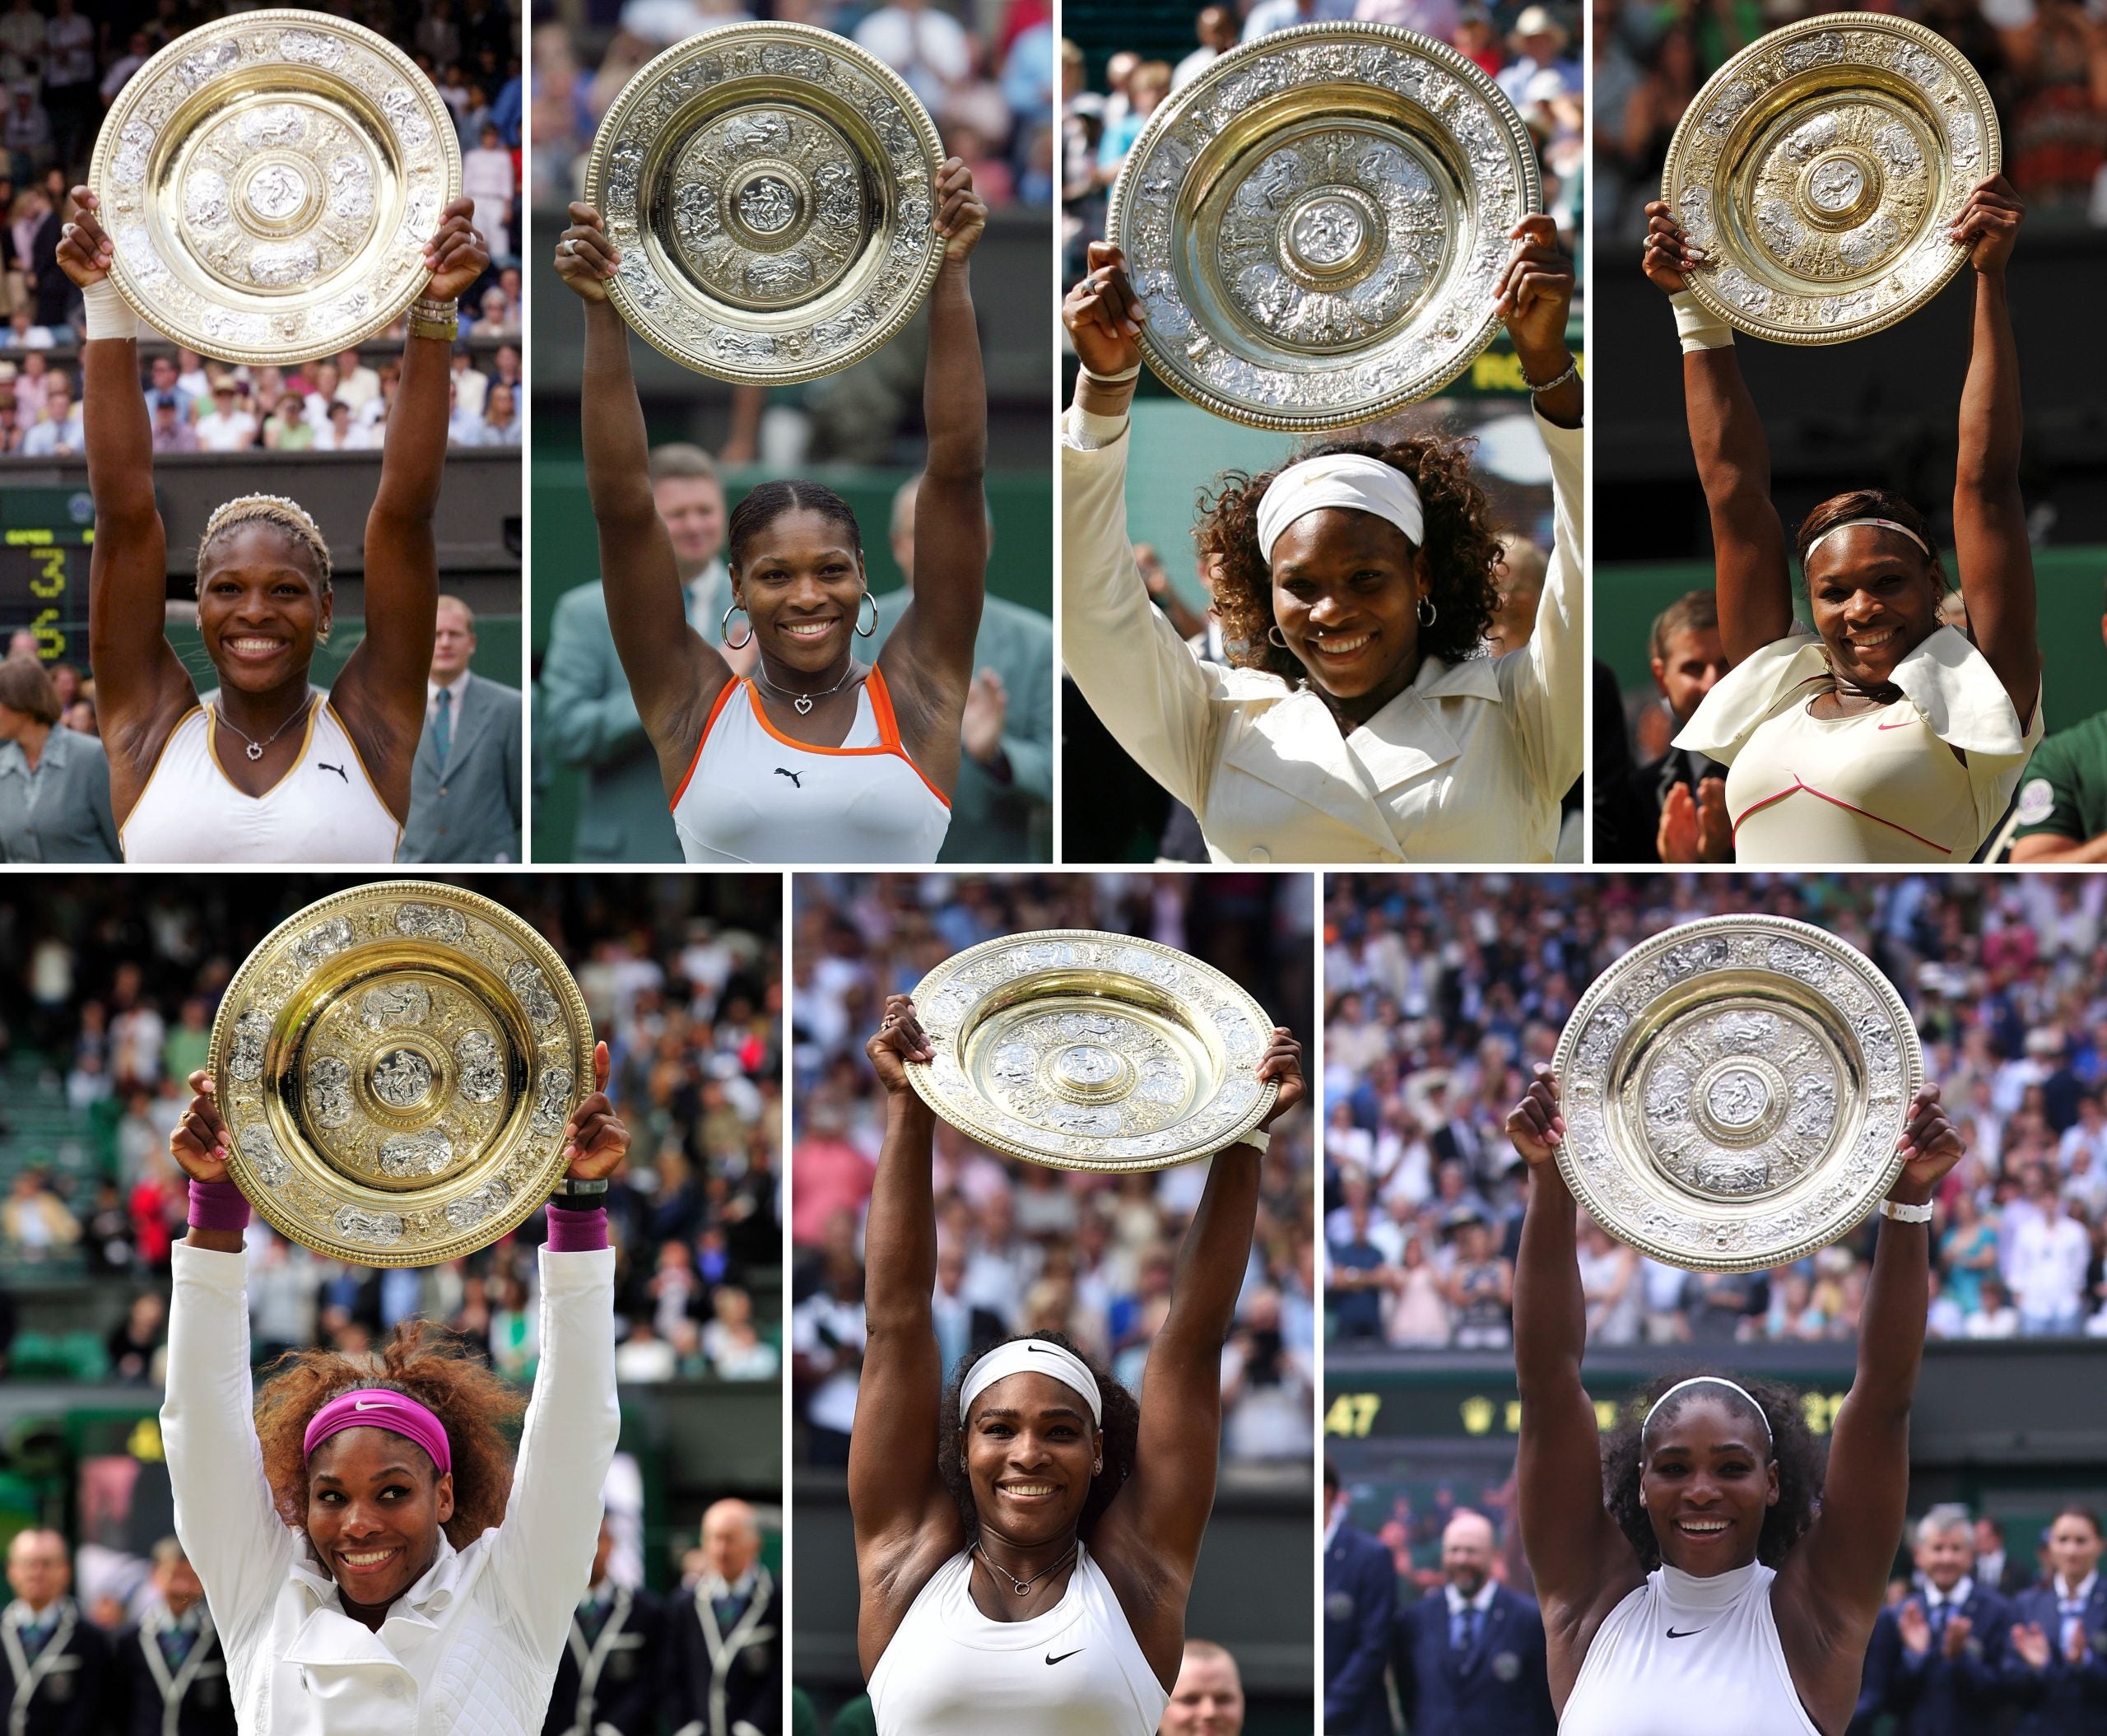 Serena Williams Announces Retirement